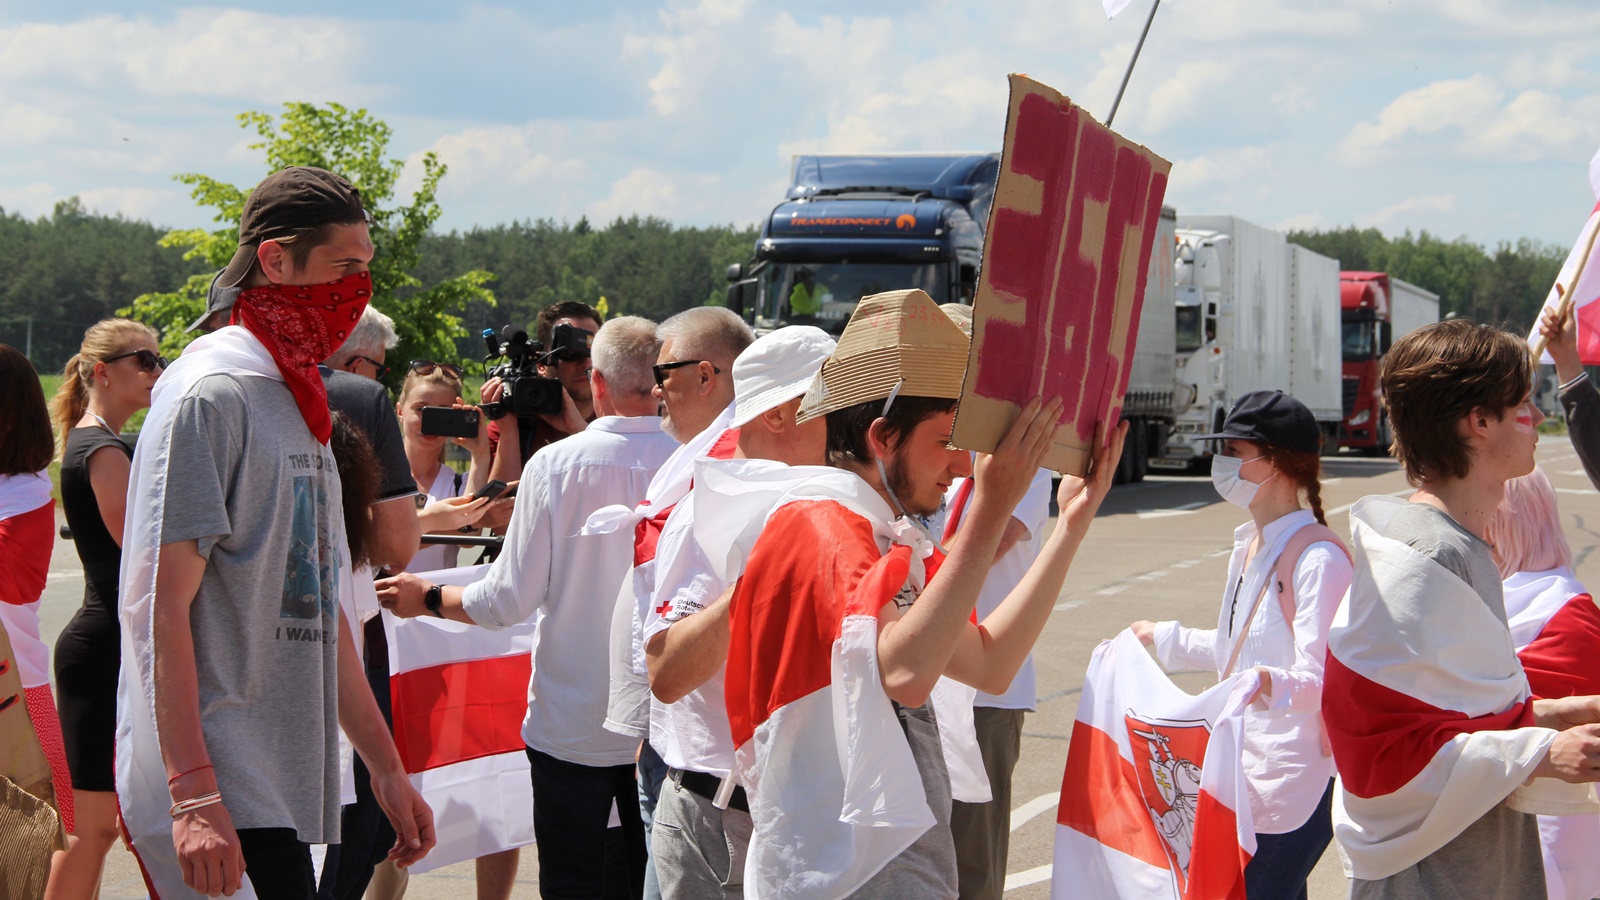 Protest pod hasłem "Dla wolnej Białorusi" w okolicach przejścia granicznego w Bobrownikach, fot. Marcin Mazewski